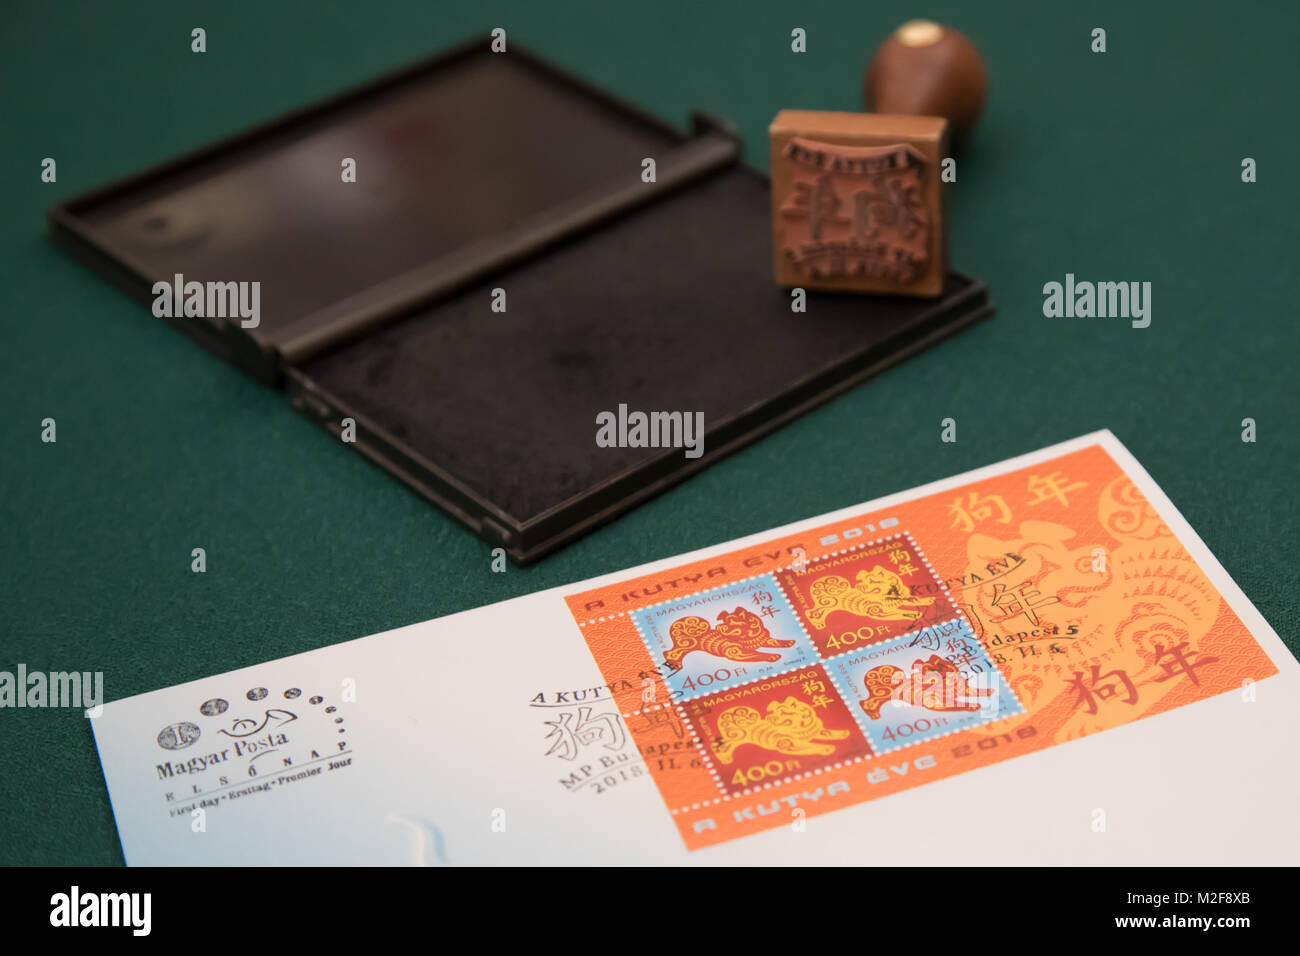 Budapest. Feb 6, 2018. Le premier jour est vu sur une table au musée du timbre hongrois à Budapest, Hongrie le 6 février 2018. Le zodiac timbre émis par la poste hongroise en l'honneur de l'année chinoise du chien a été présenté au public dans le musée du timbre Hongrois ici mardi. C'est la cinquième édition d'un timbre Hongrois commémorant le Nouvel An chinois depuis la première a été publié en 2014, l'année du cheval. Credit : Attila Volgyi/Xinhua/Alamy Live News Banque D'Images